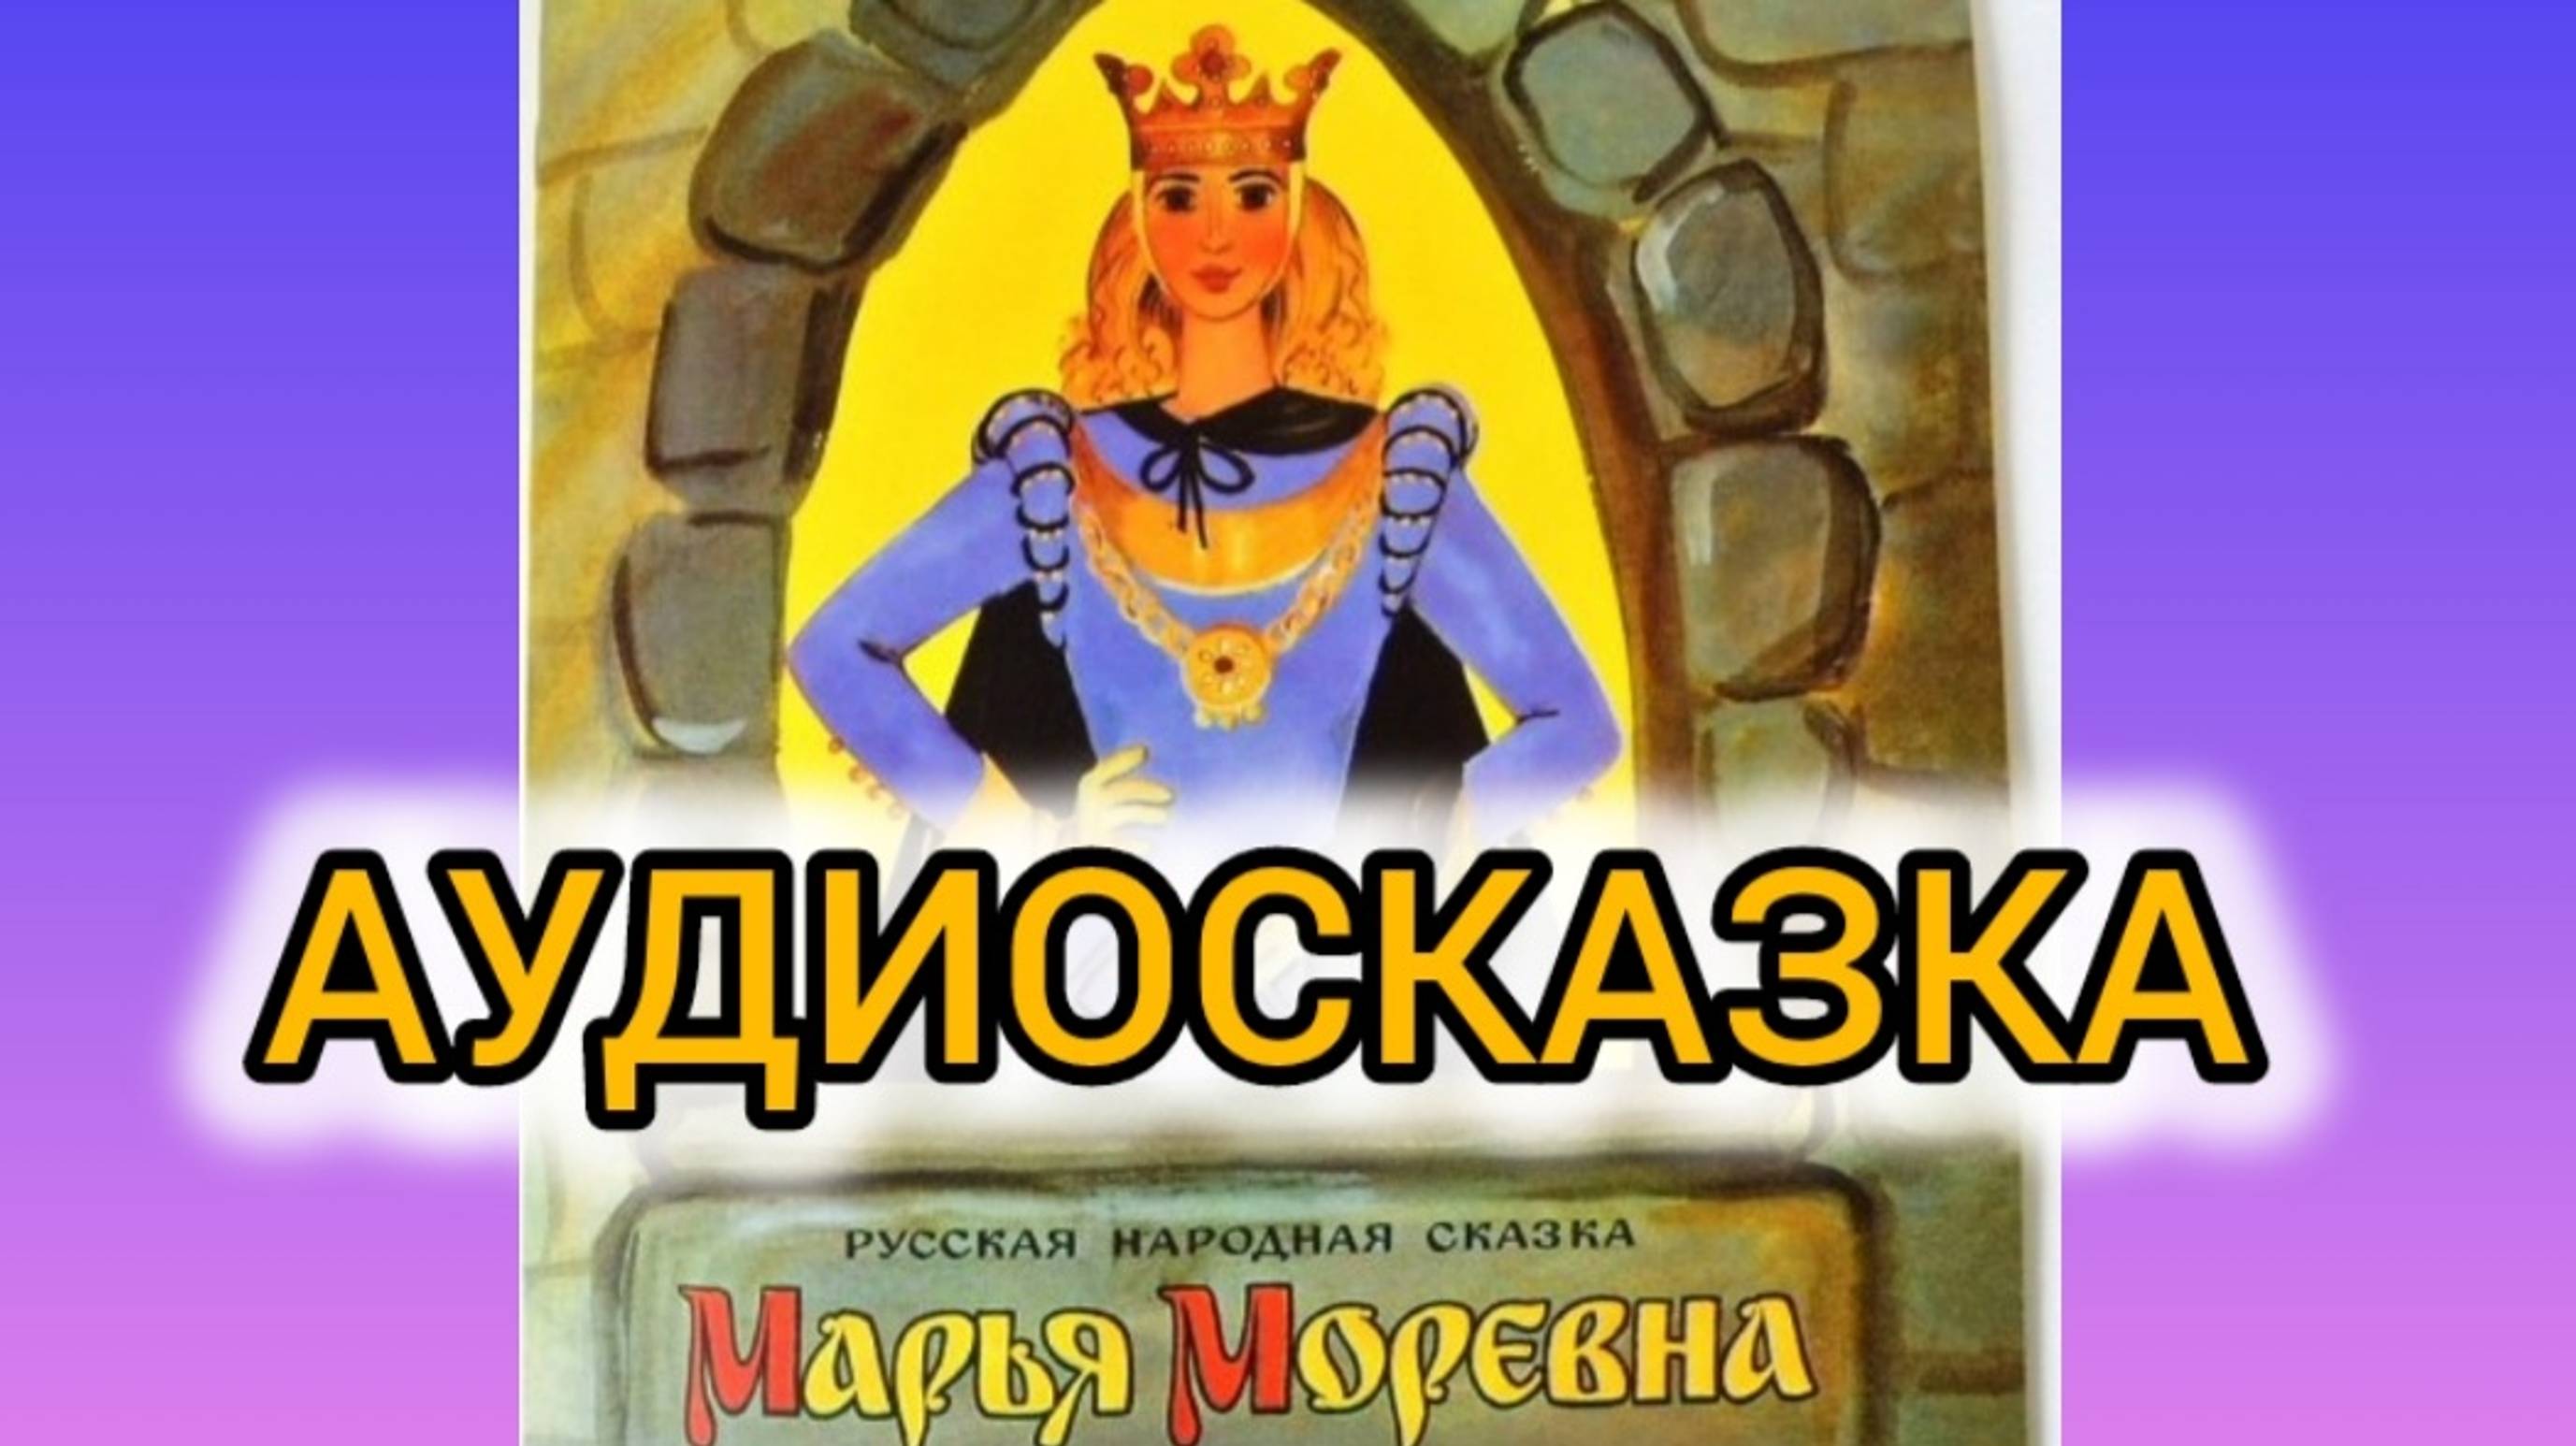 Марья Моревна | Народные сказки | Сказки детям | Сказка на ночь 😴 Аудиосказка